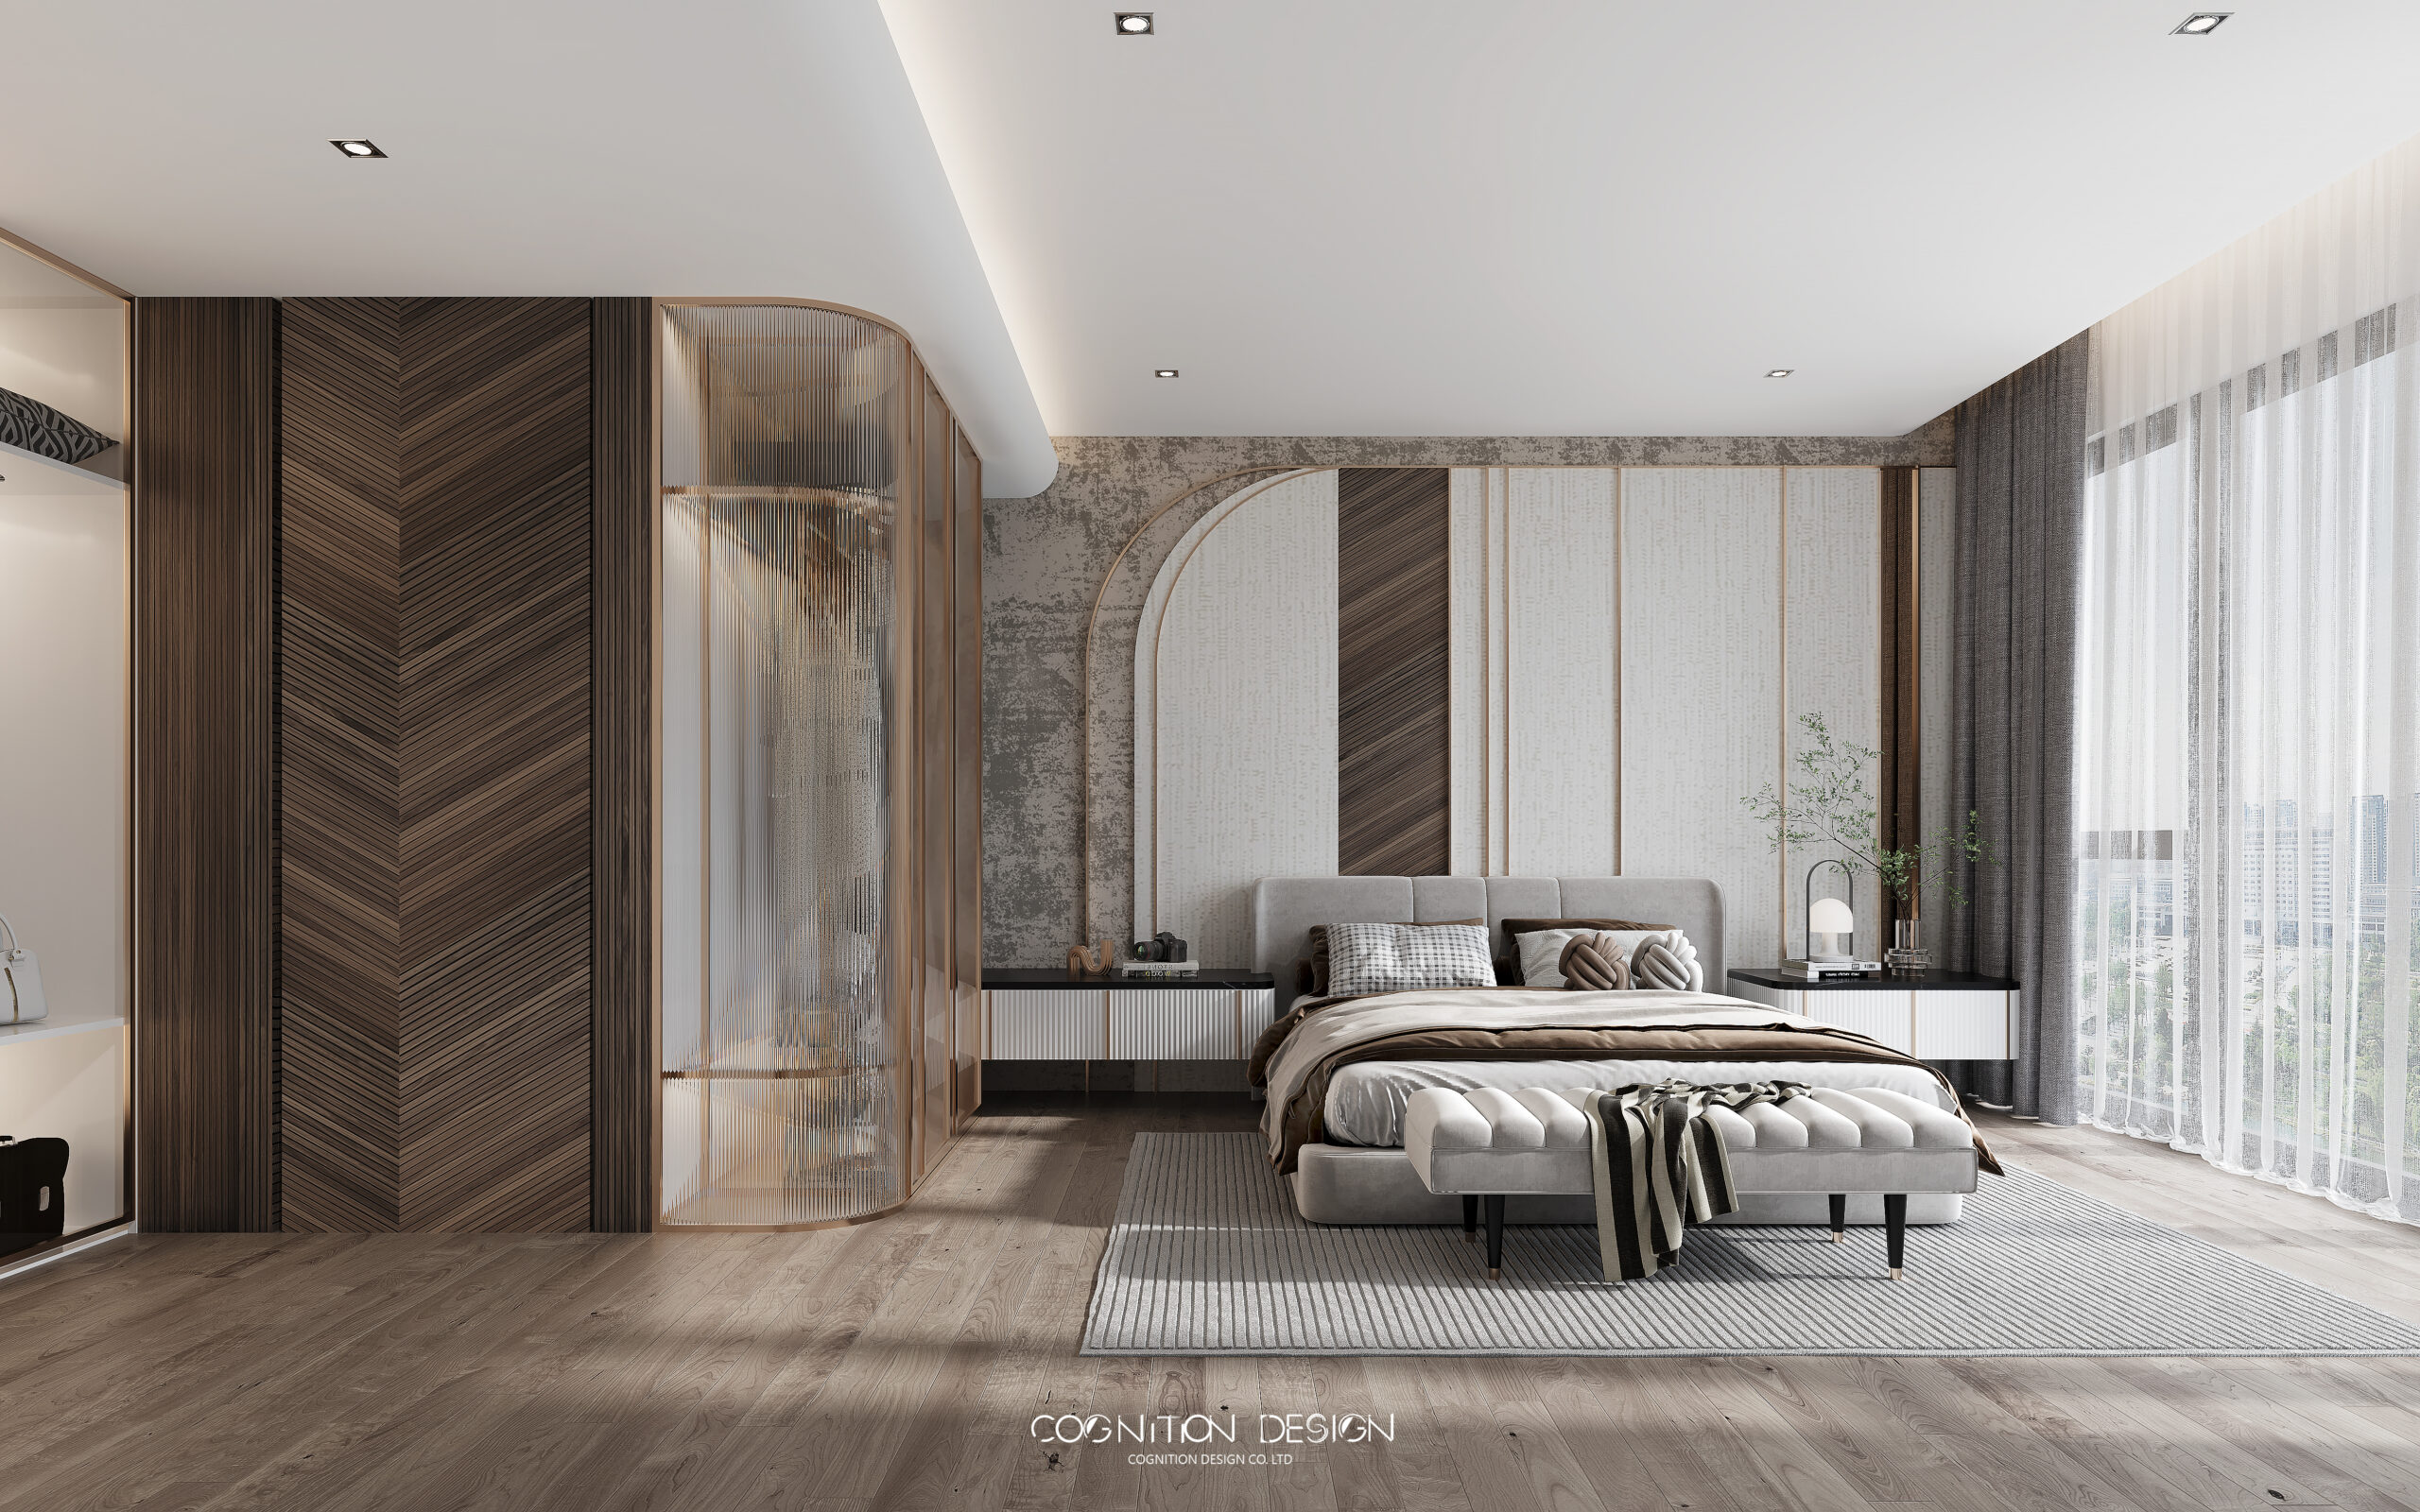 淺色系列的現代低調奢華，利用淺棕色與米白色相互搭配，床頭放置的吊燈及檯燈，與臥室整體格調完美契合，提升了空間的藝術感